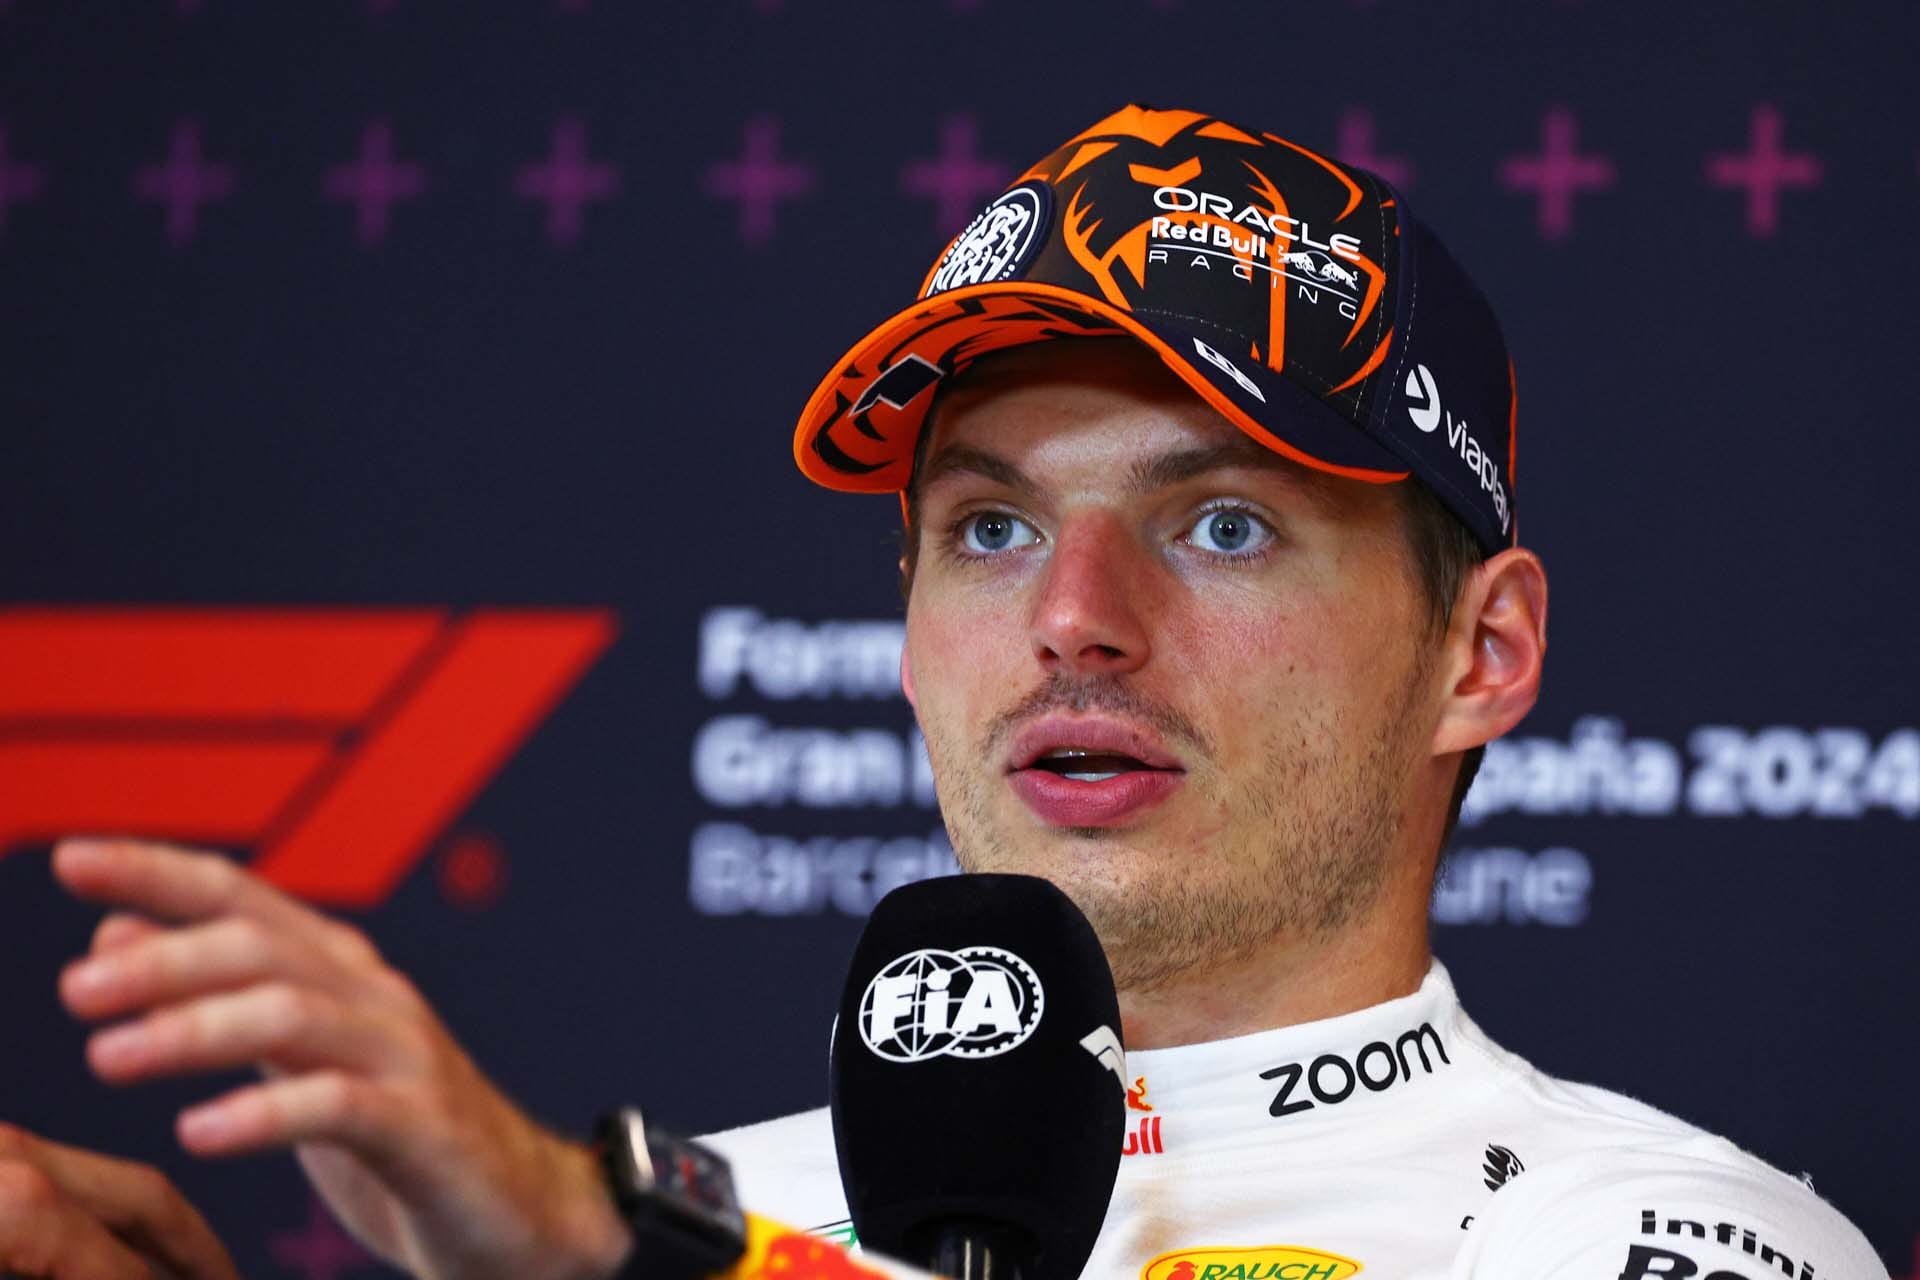 Verstappen elismeri a McLarent, de nagyobb fejlődést vár a Red Bulltól